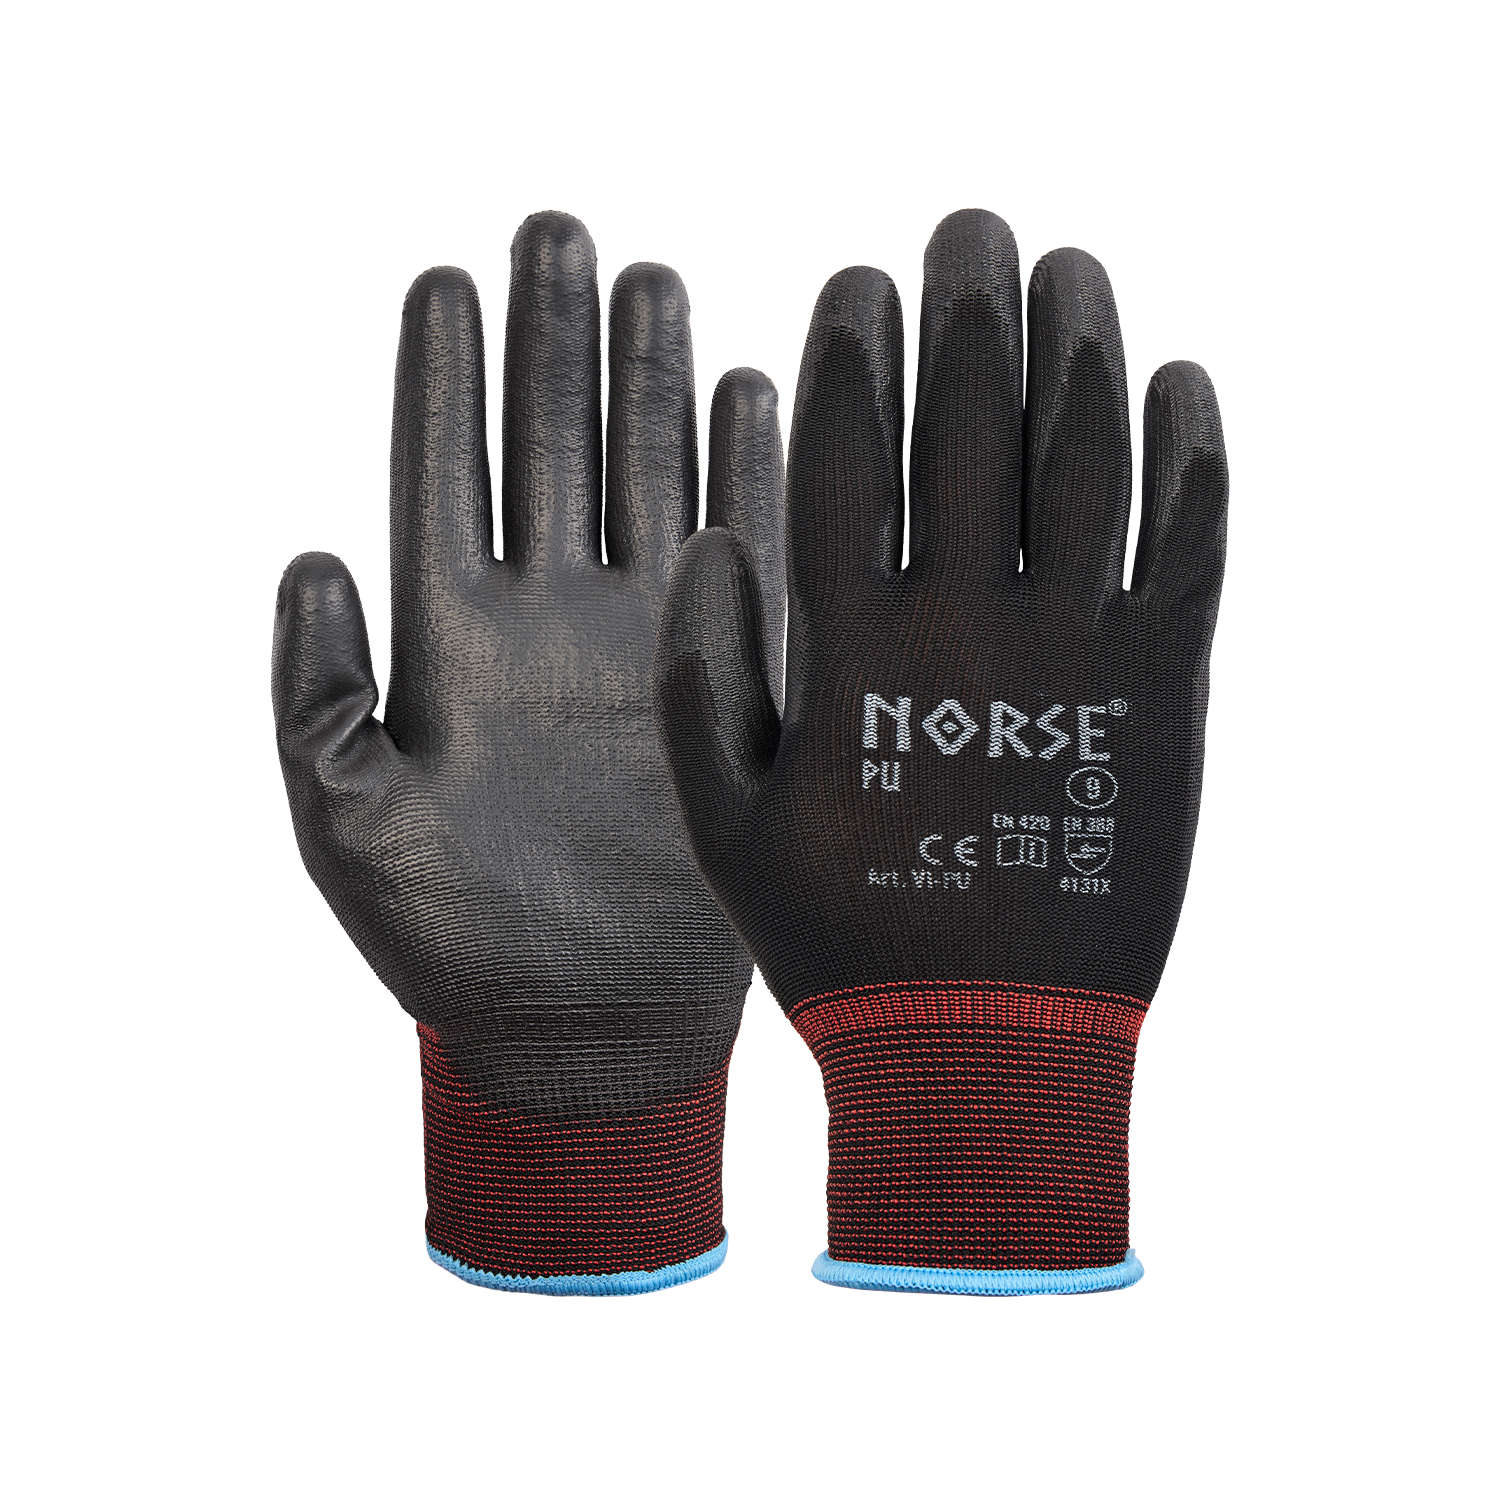 NORSE PU Black assembly gloves size 7